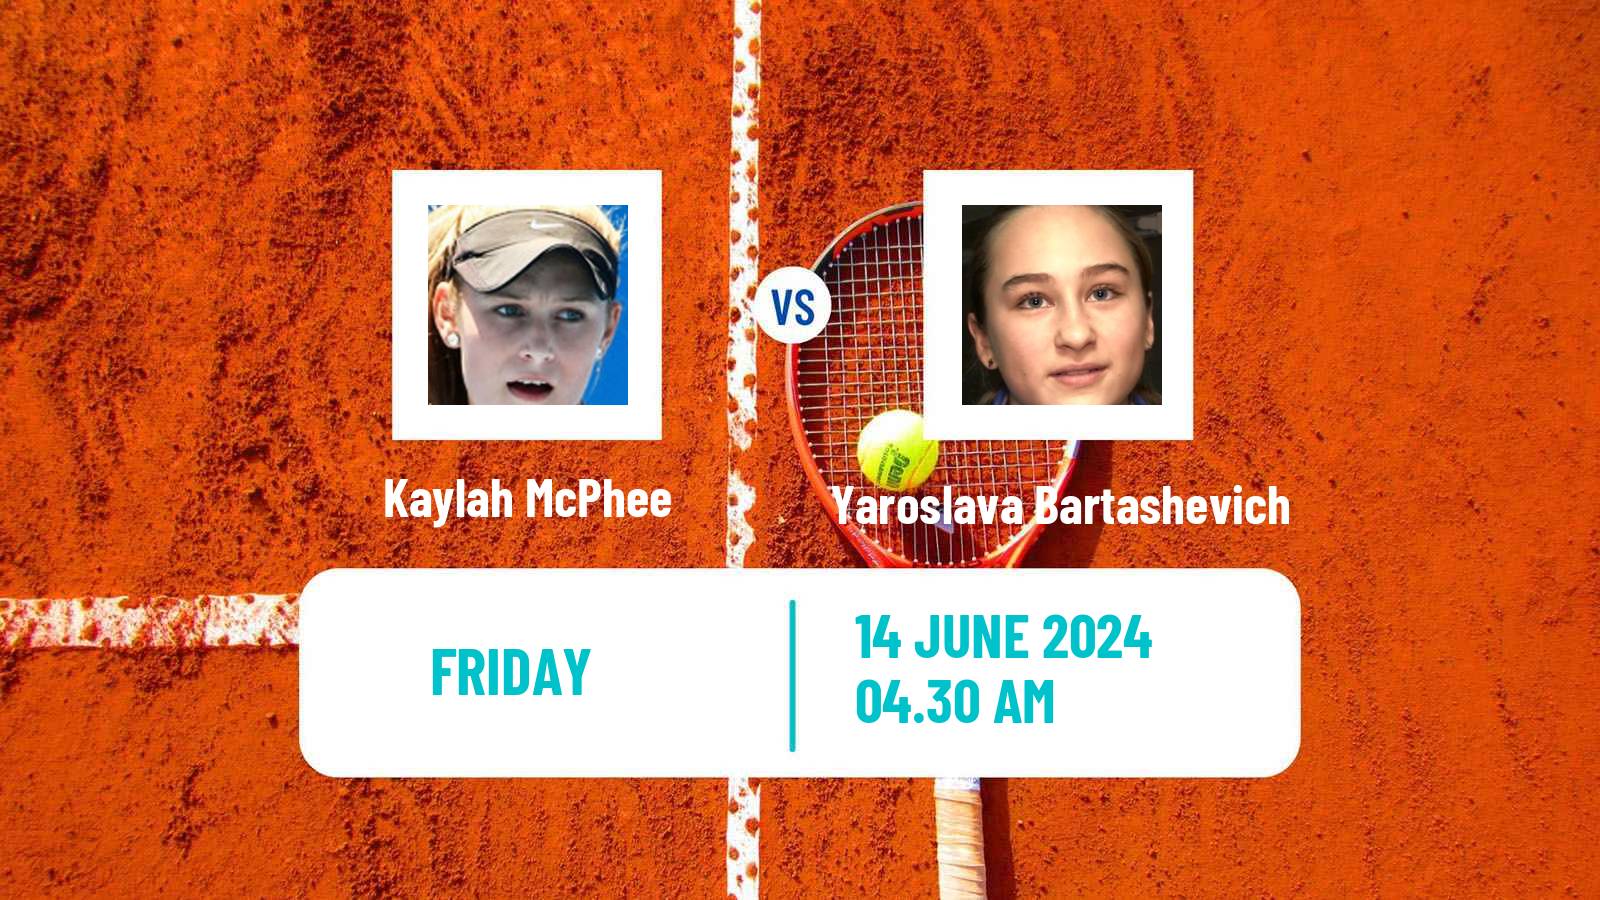 Tennis ITF W15 Kursumlijska Banja 7 Women Kaylah McPhee - Yaroslava Bartashevich